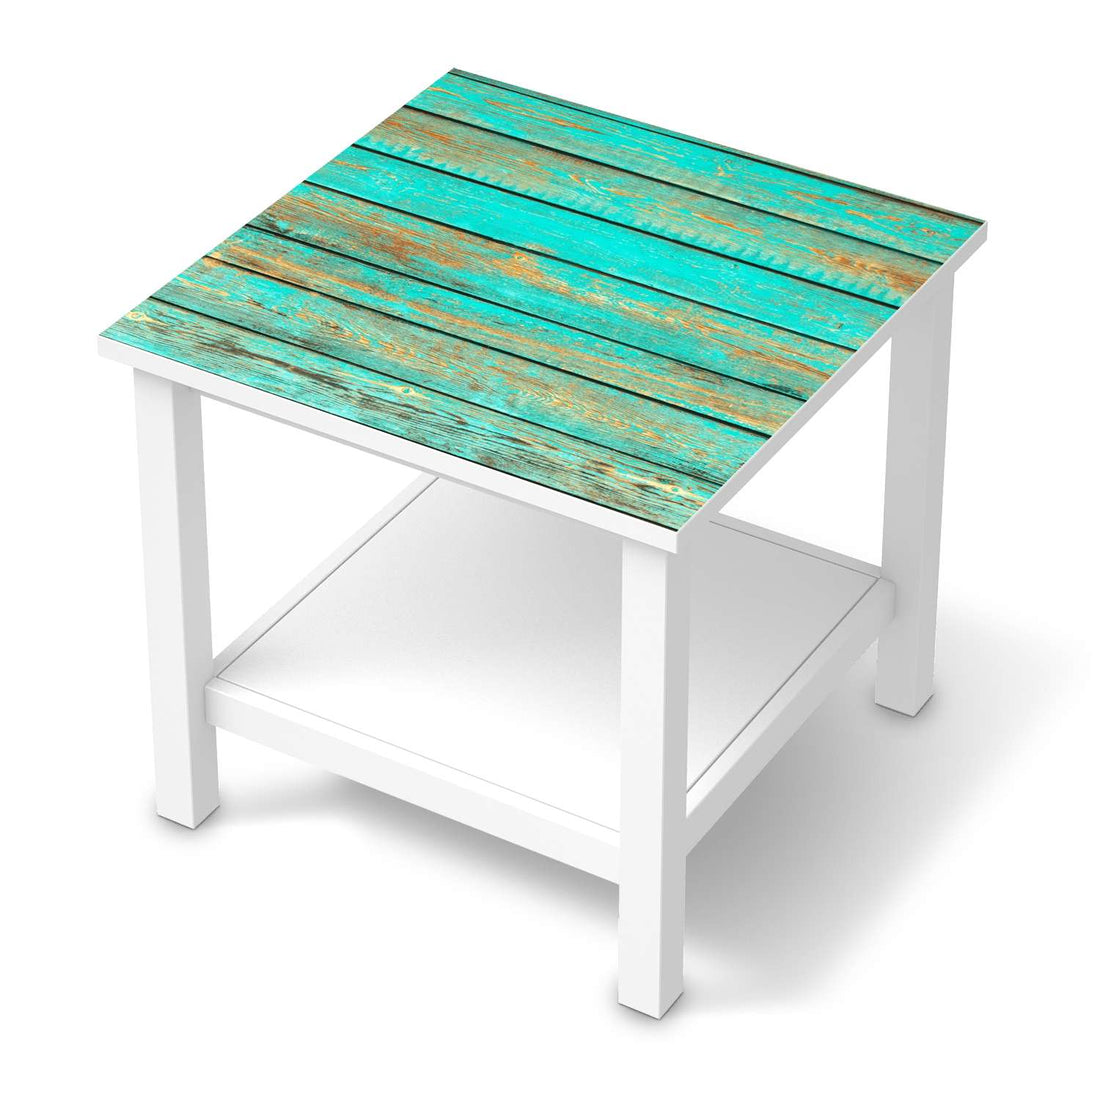 Möbel Klebefolie Wooden Aqua - IKEA Hemnes Beistelltisch 55x55 cm  - weiss